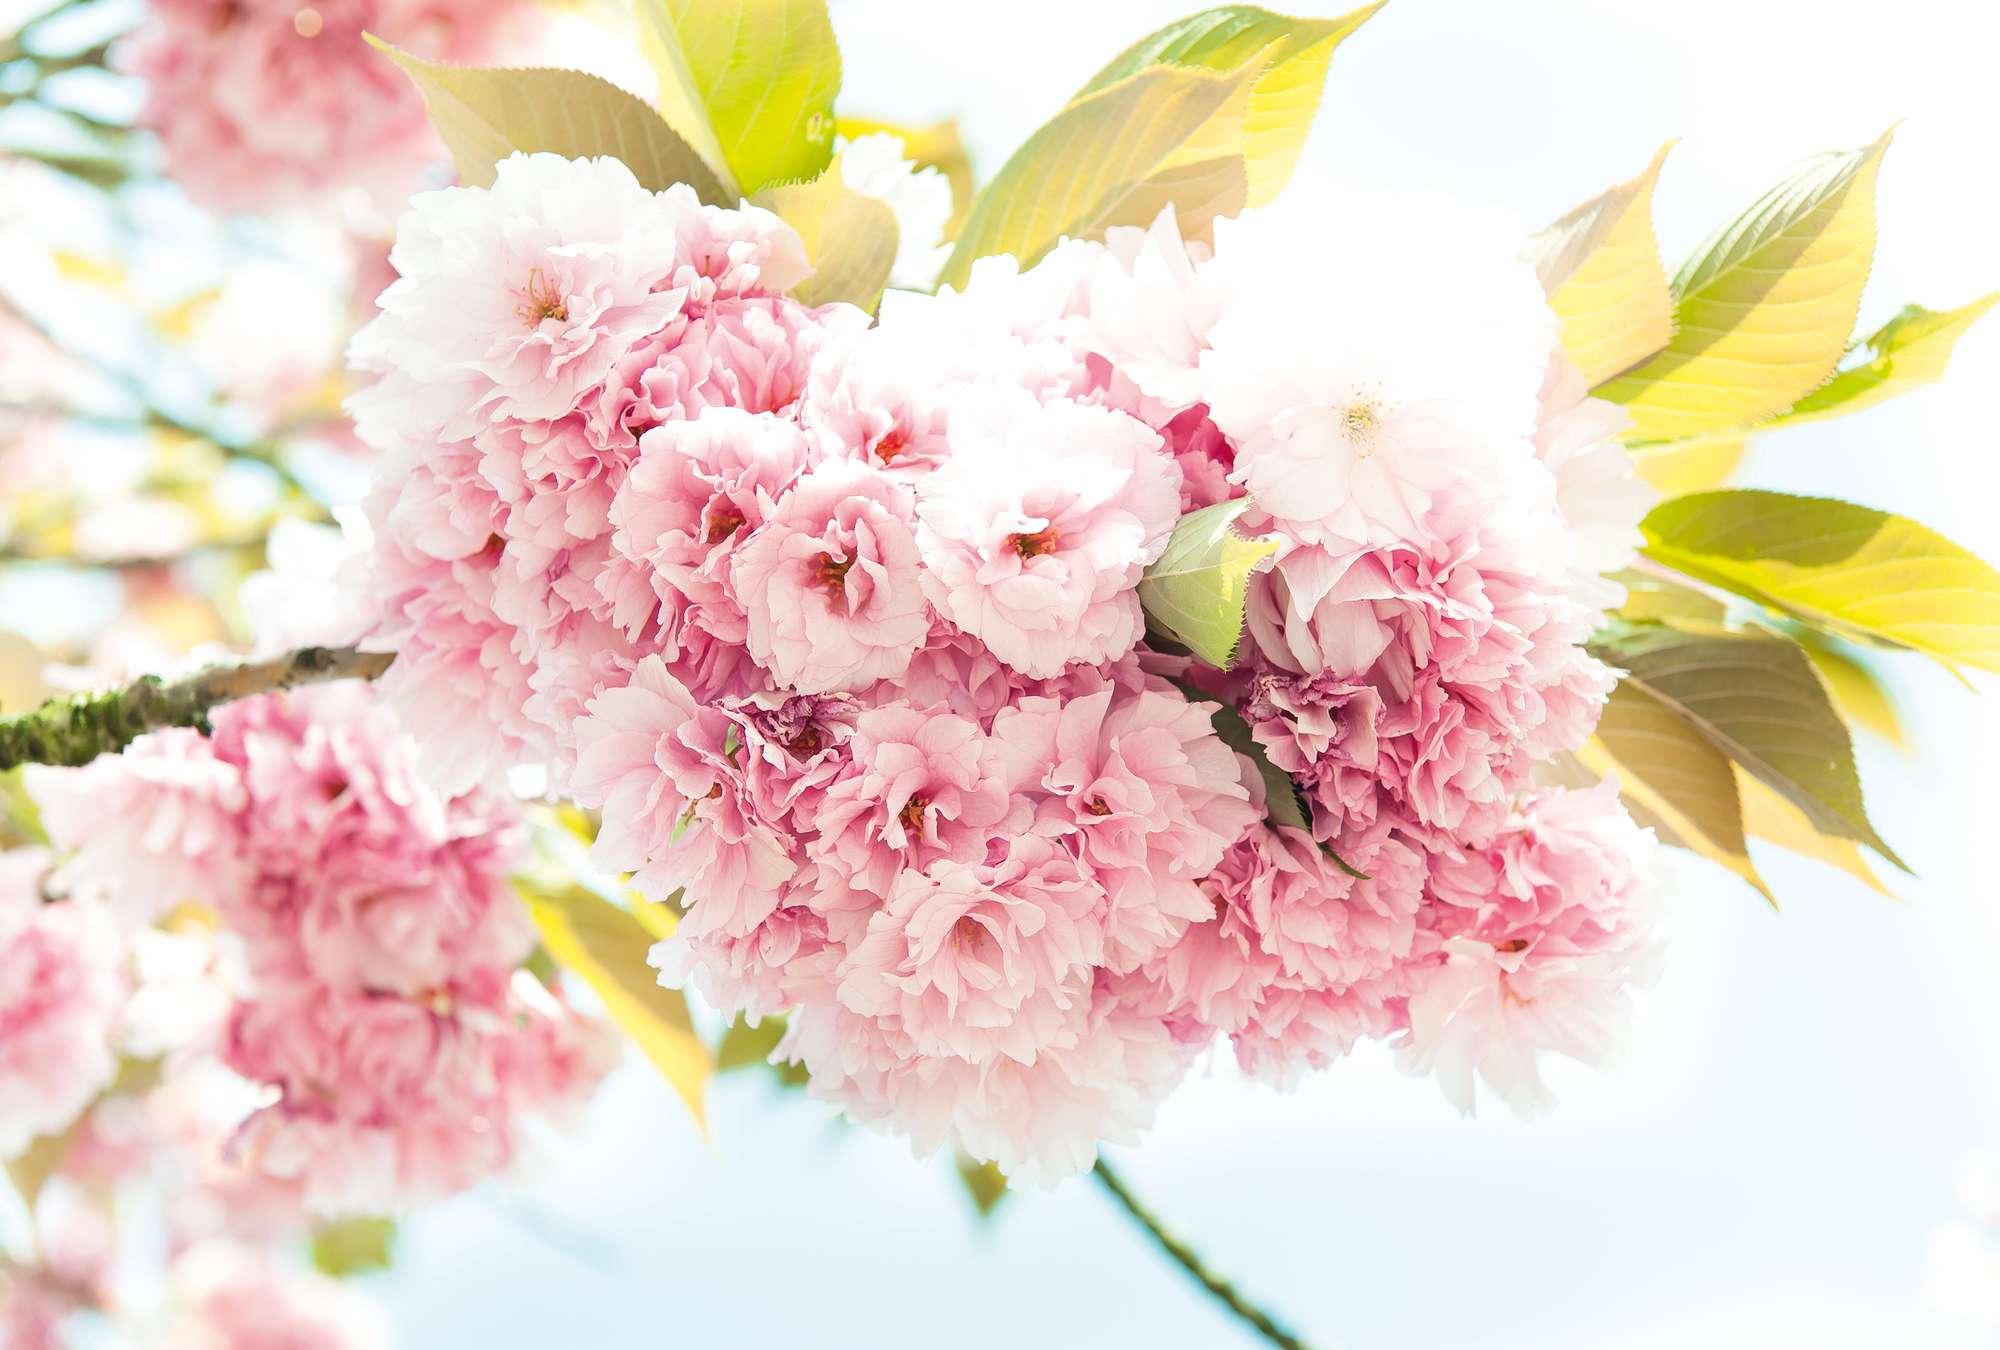             Primavera, rosa - Fiori delicati in ottica 3D e formato XXL
        